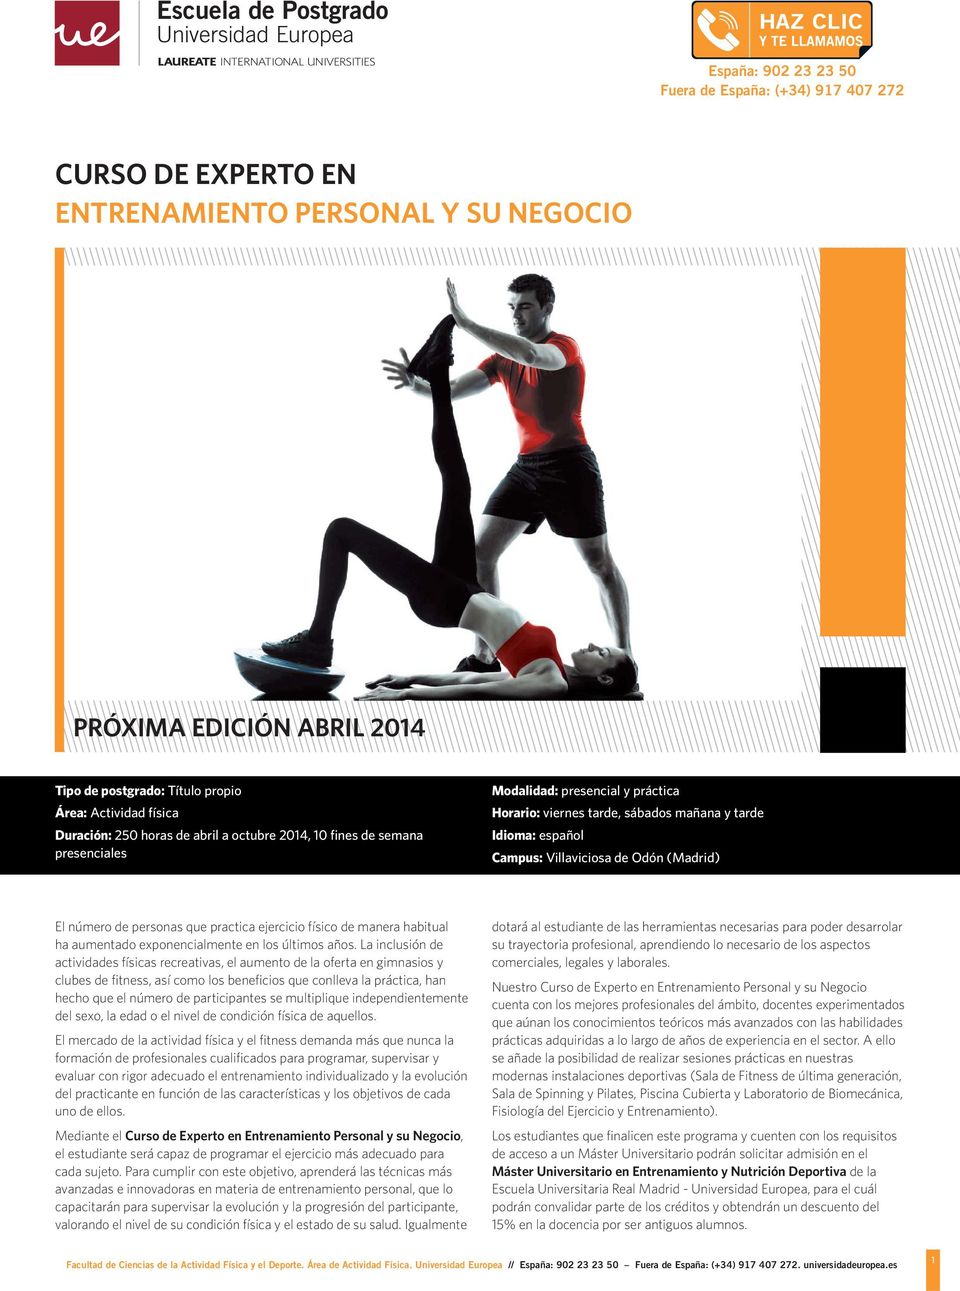 Odón (Madrid) El número de personas que practica ejercicio físico de manera habitual ha aumentado exponencialmente en los últimos años.